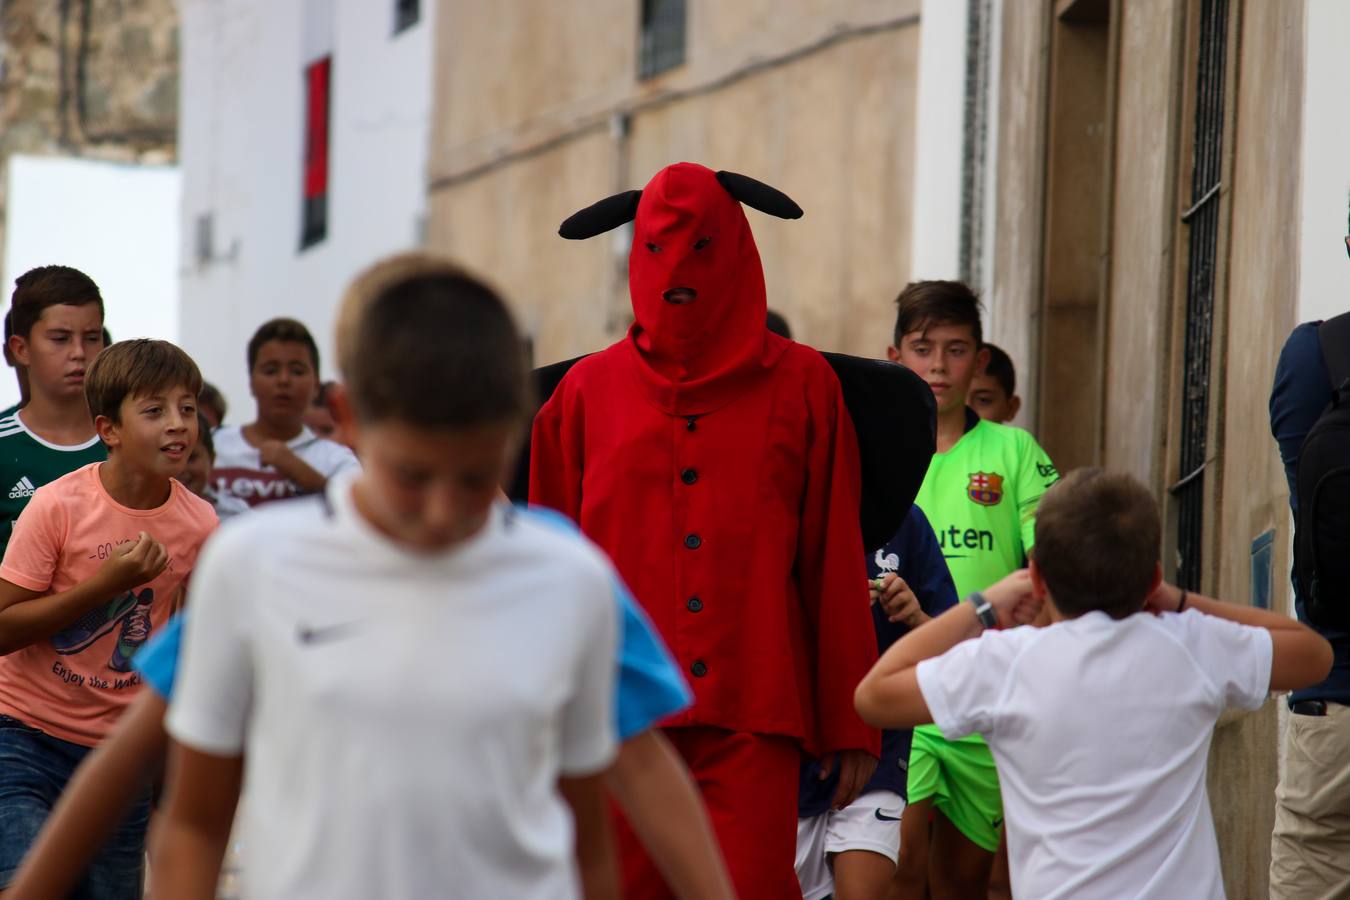 La 'salida del diablo' continúa aunando fiesta, tradición y leyenda en Jerez